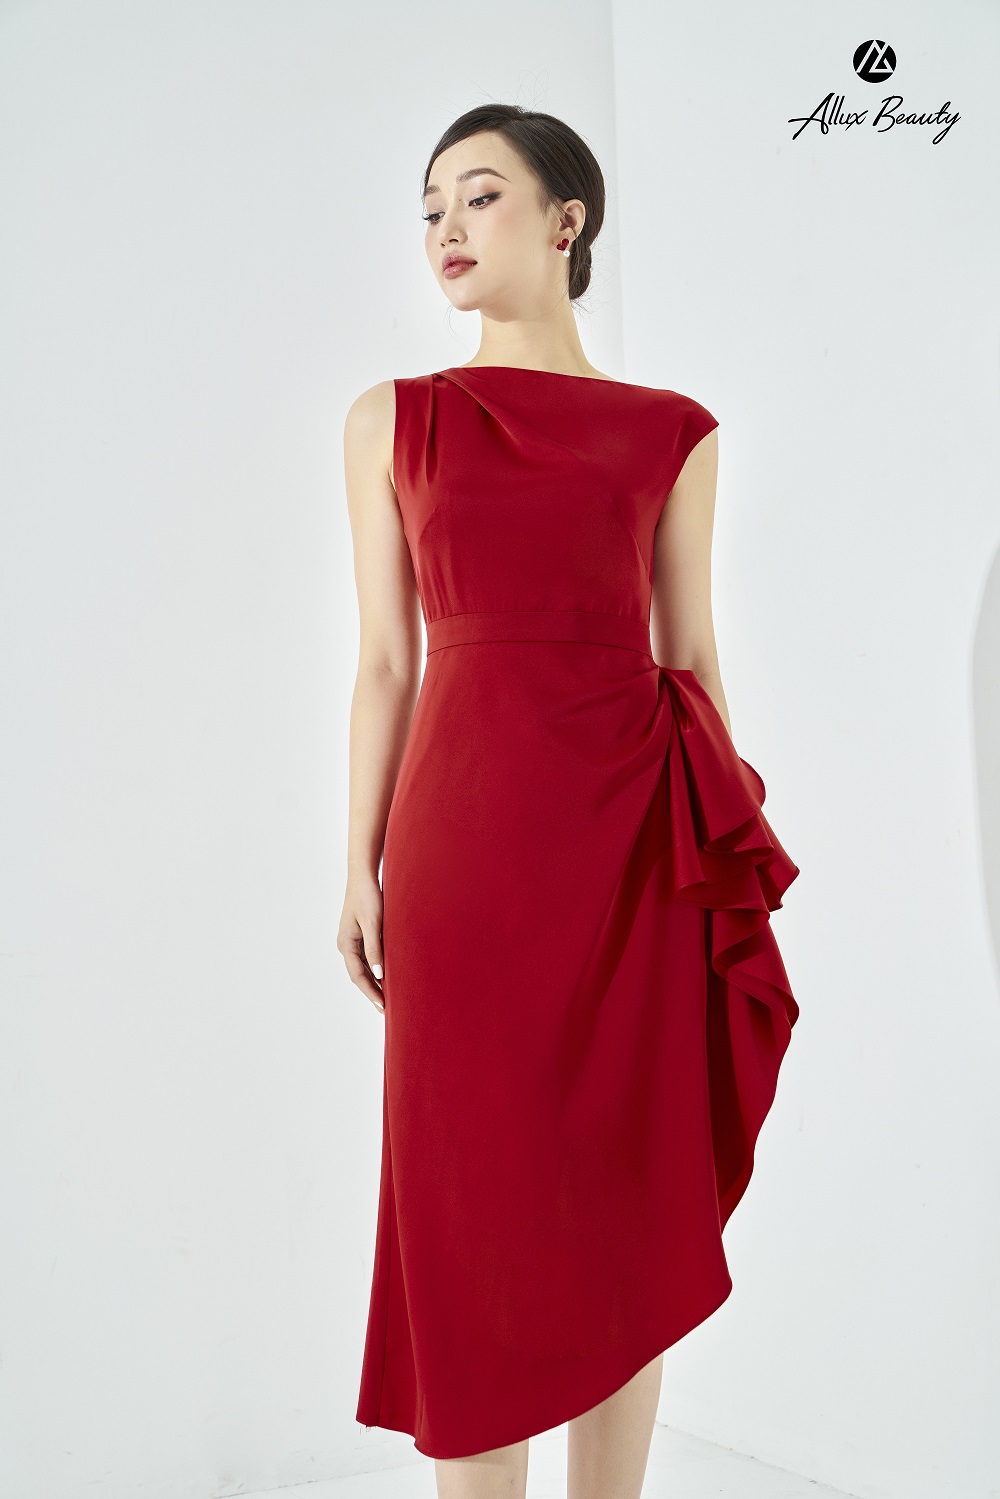 Gợi ý 8 mẫu váy đỏ đẹp cực phẩm, biến nàng trở thành tiêu điểm từ tiệc tất  niên cho tới buổi du xuân đầu năm